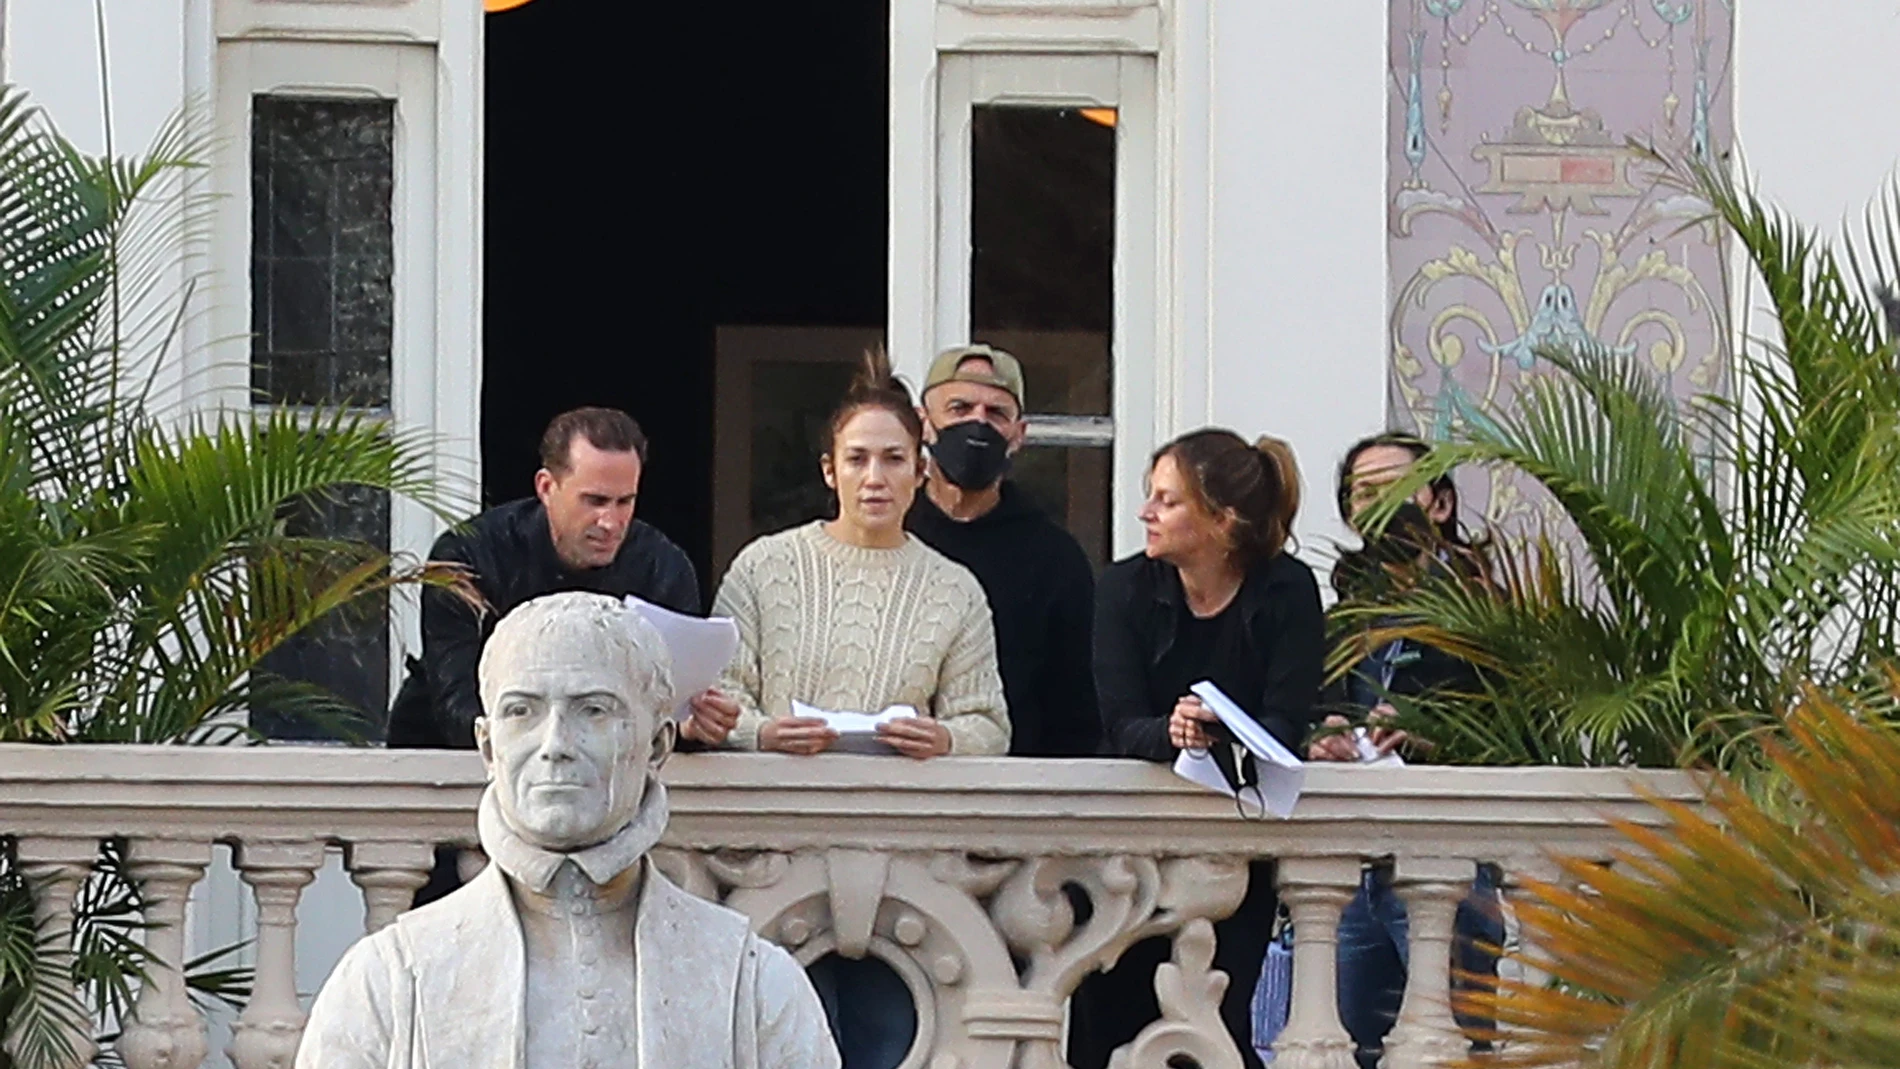 La cantante y actriz estadounidense Jennifer López (2i) ensaya una de las escenas de la película "The mother". EFE/ Elvira Urquijo A.